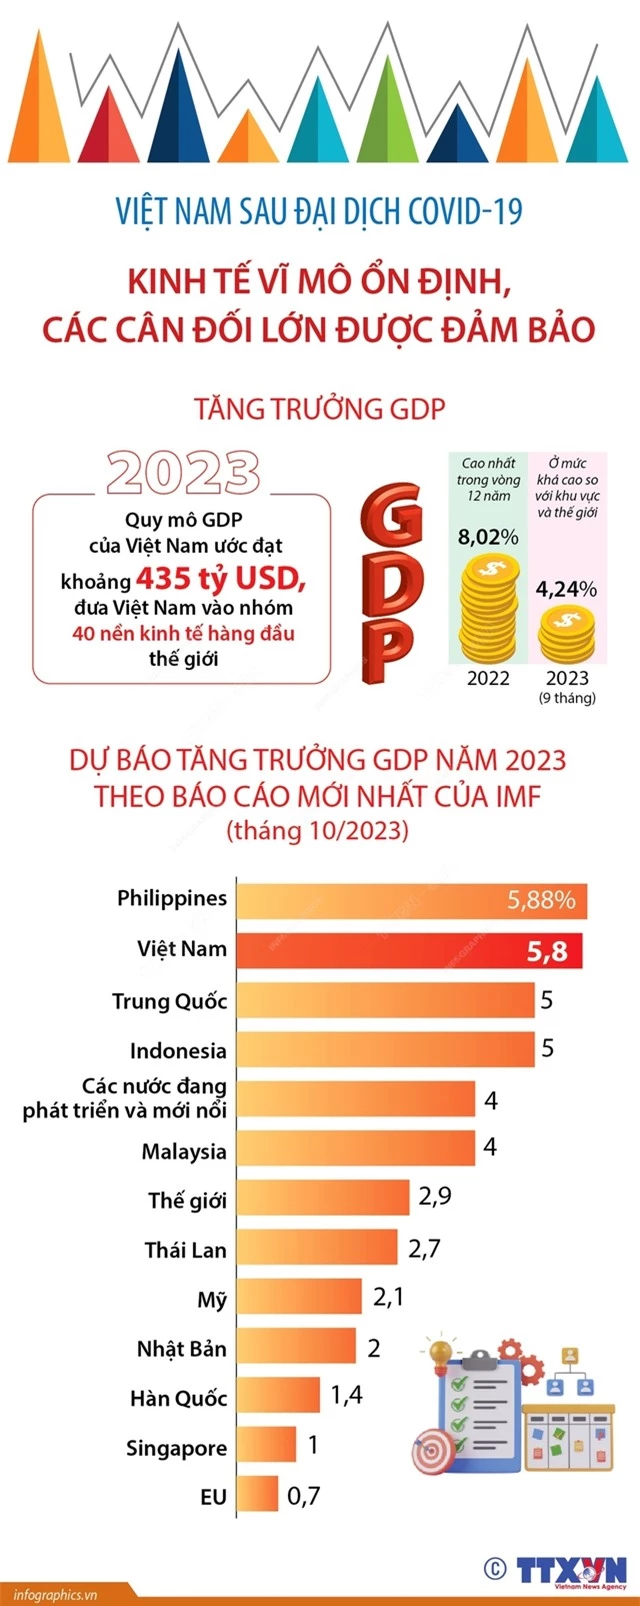 Việt Nam sau đại dịch COVID-19: Kinh tế vĩ mô ổn định, các cân đối lớn được đảm bảo - Ảnh 1.